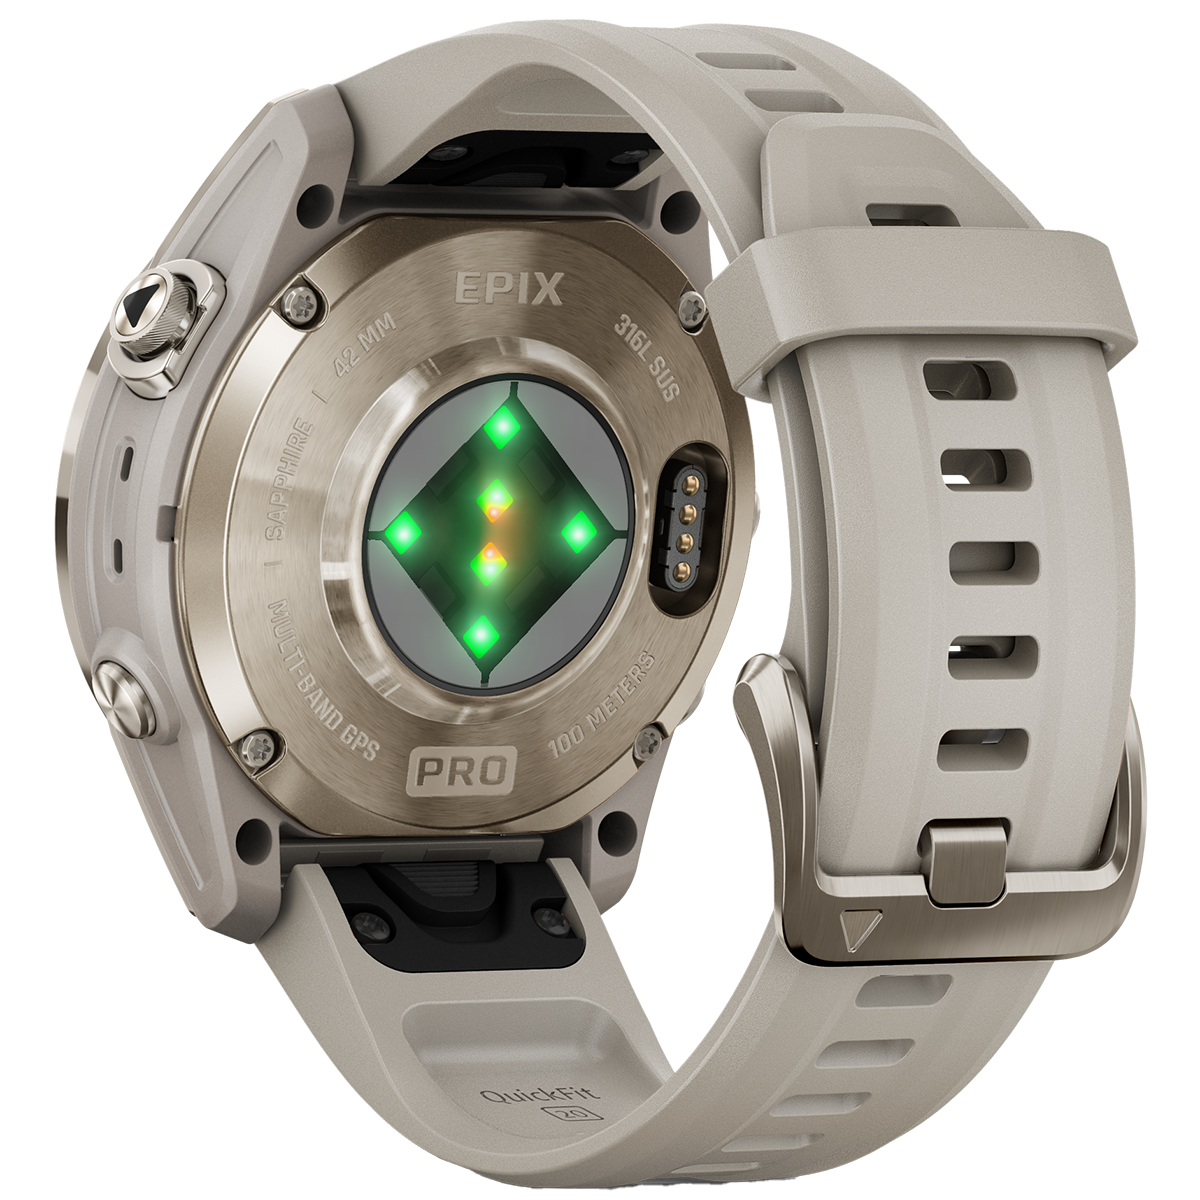 Garmin Epix Pro Gen 2 Sport Watch - Accessories